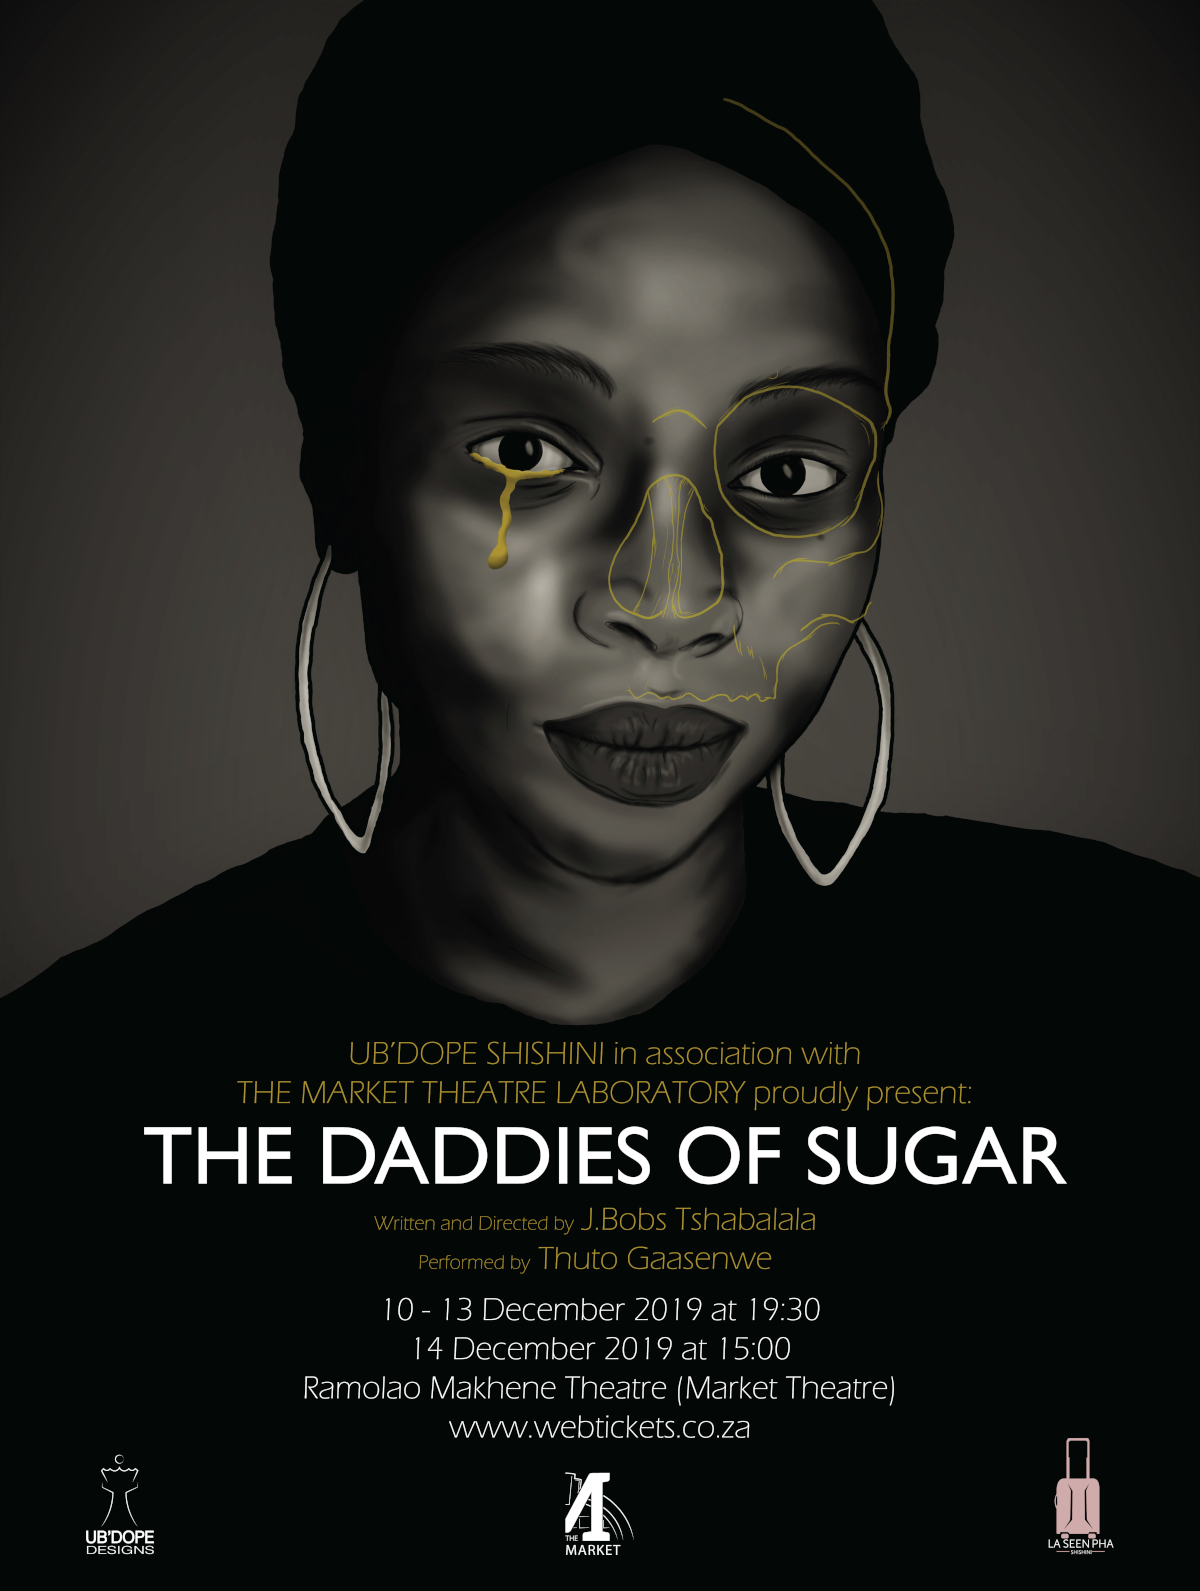 The Daddies of Sugar